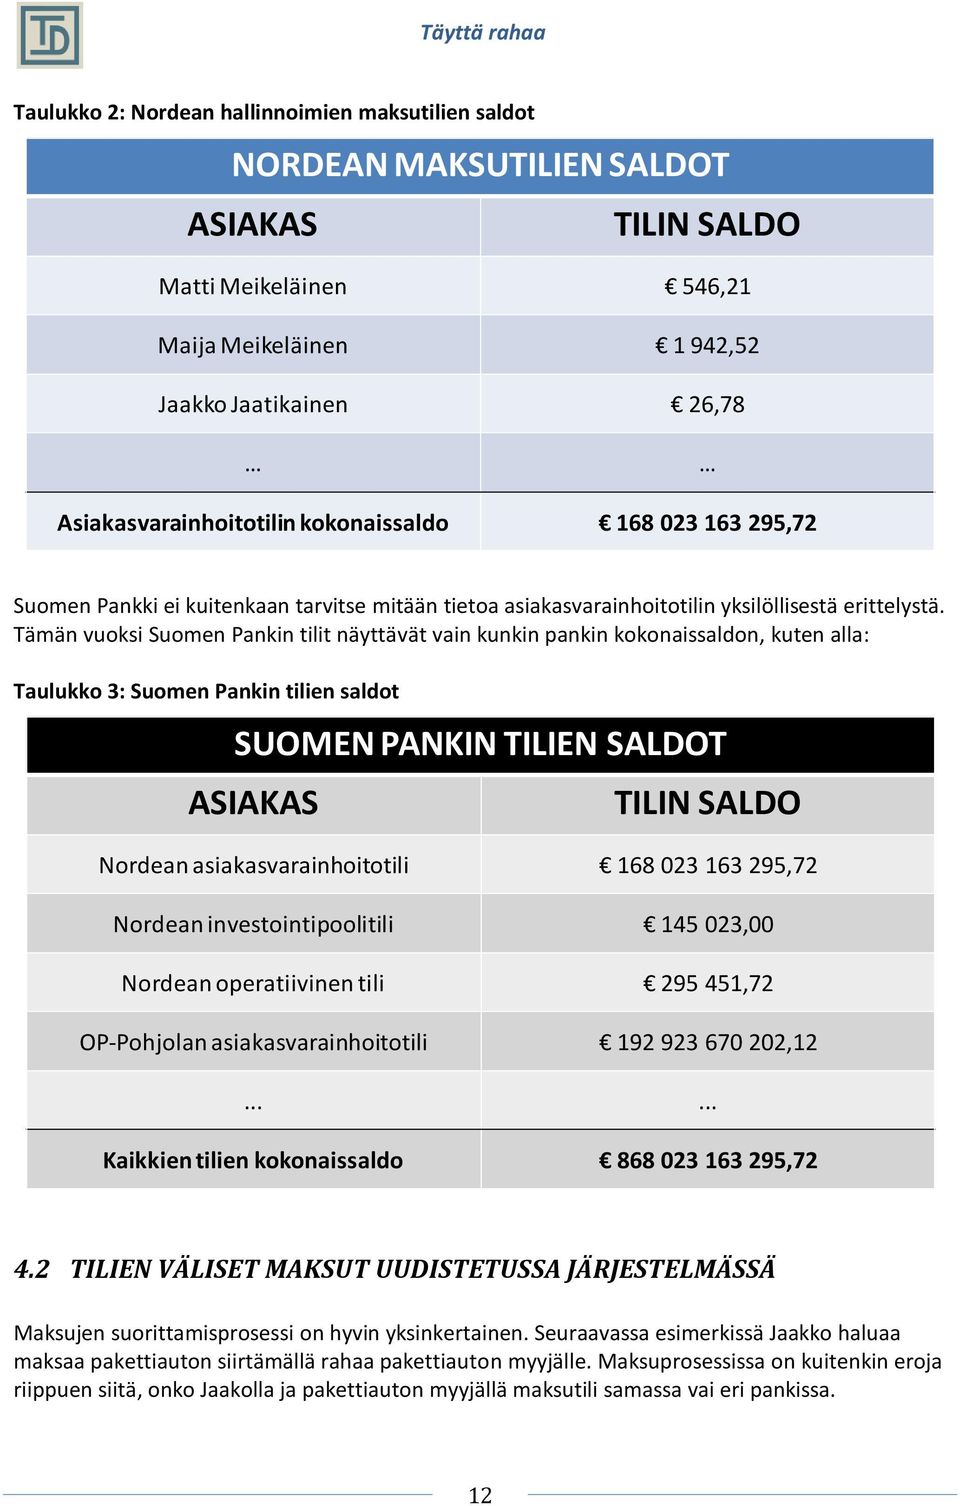 Tämän vuoksi Suomen Pankin tilit näyttävät vain kunkin pankin kokonaissaldon, kuten alla: Taulukko 3: Suomen Pankin tilien saldot SUOMEN PANKIN TILIEN SALDOT ASIAKAS TILIN SALDO Nordean